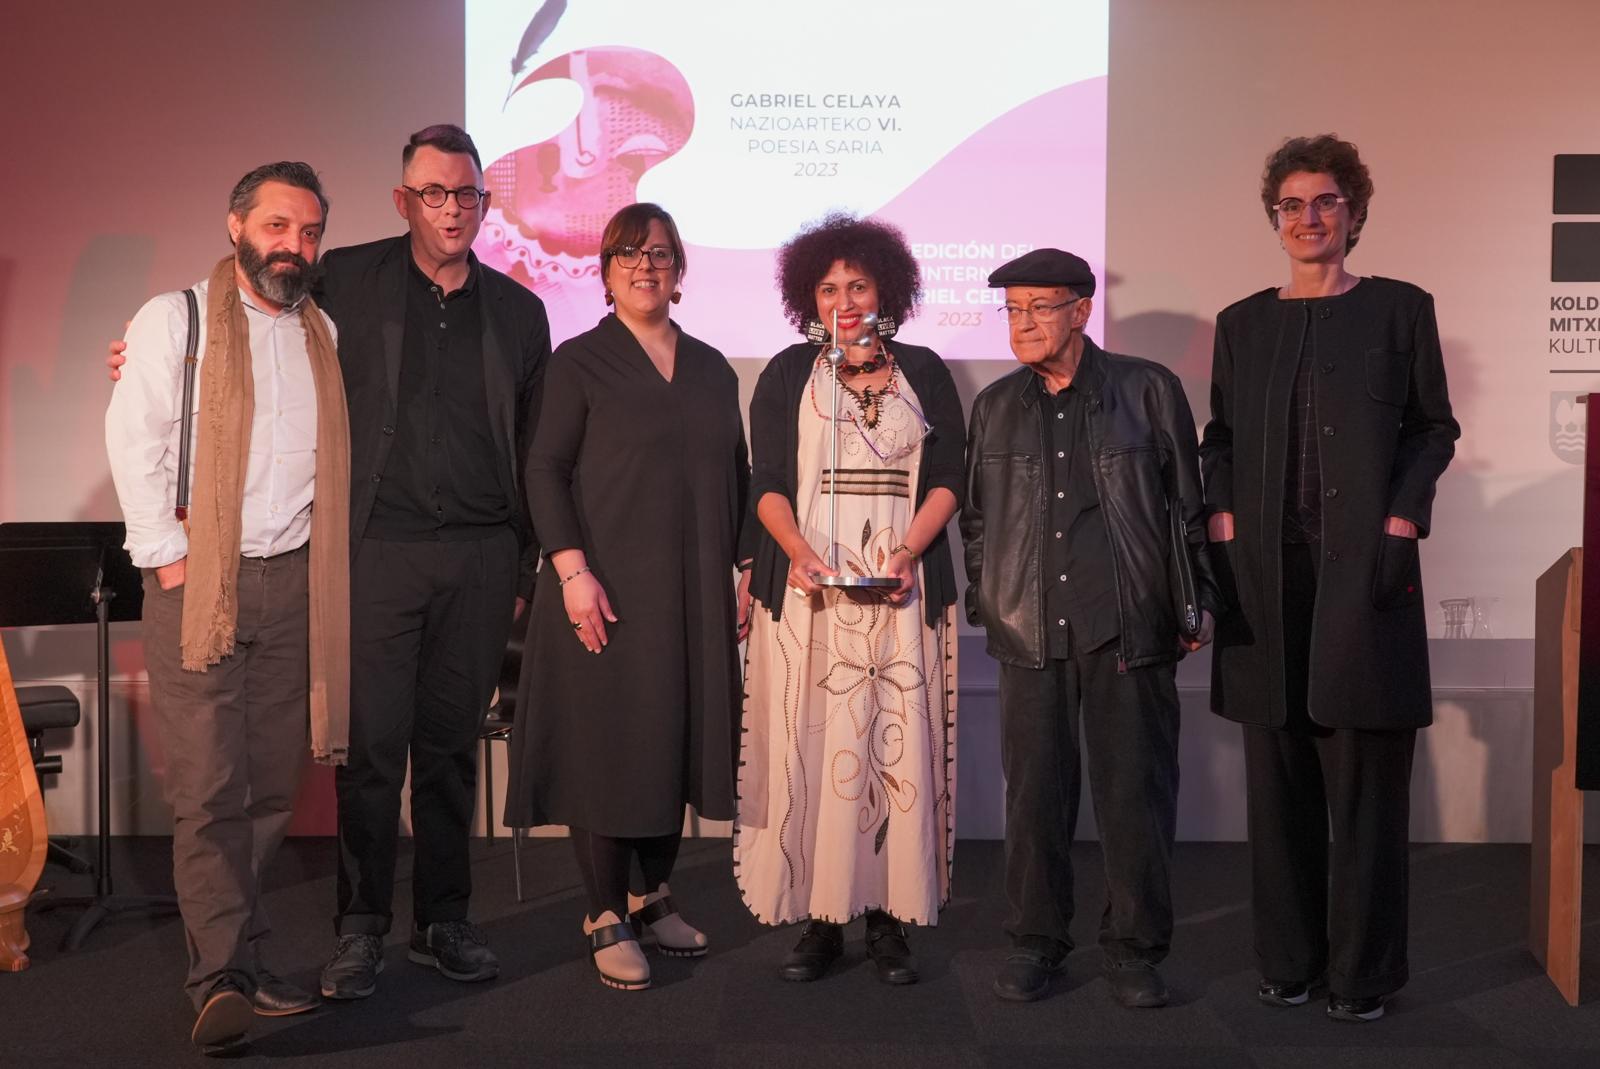 La escritora colombiana Luisa Villa recibe el VI Premio Gabriel Celaya